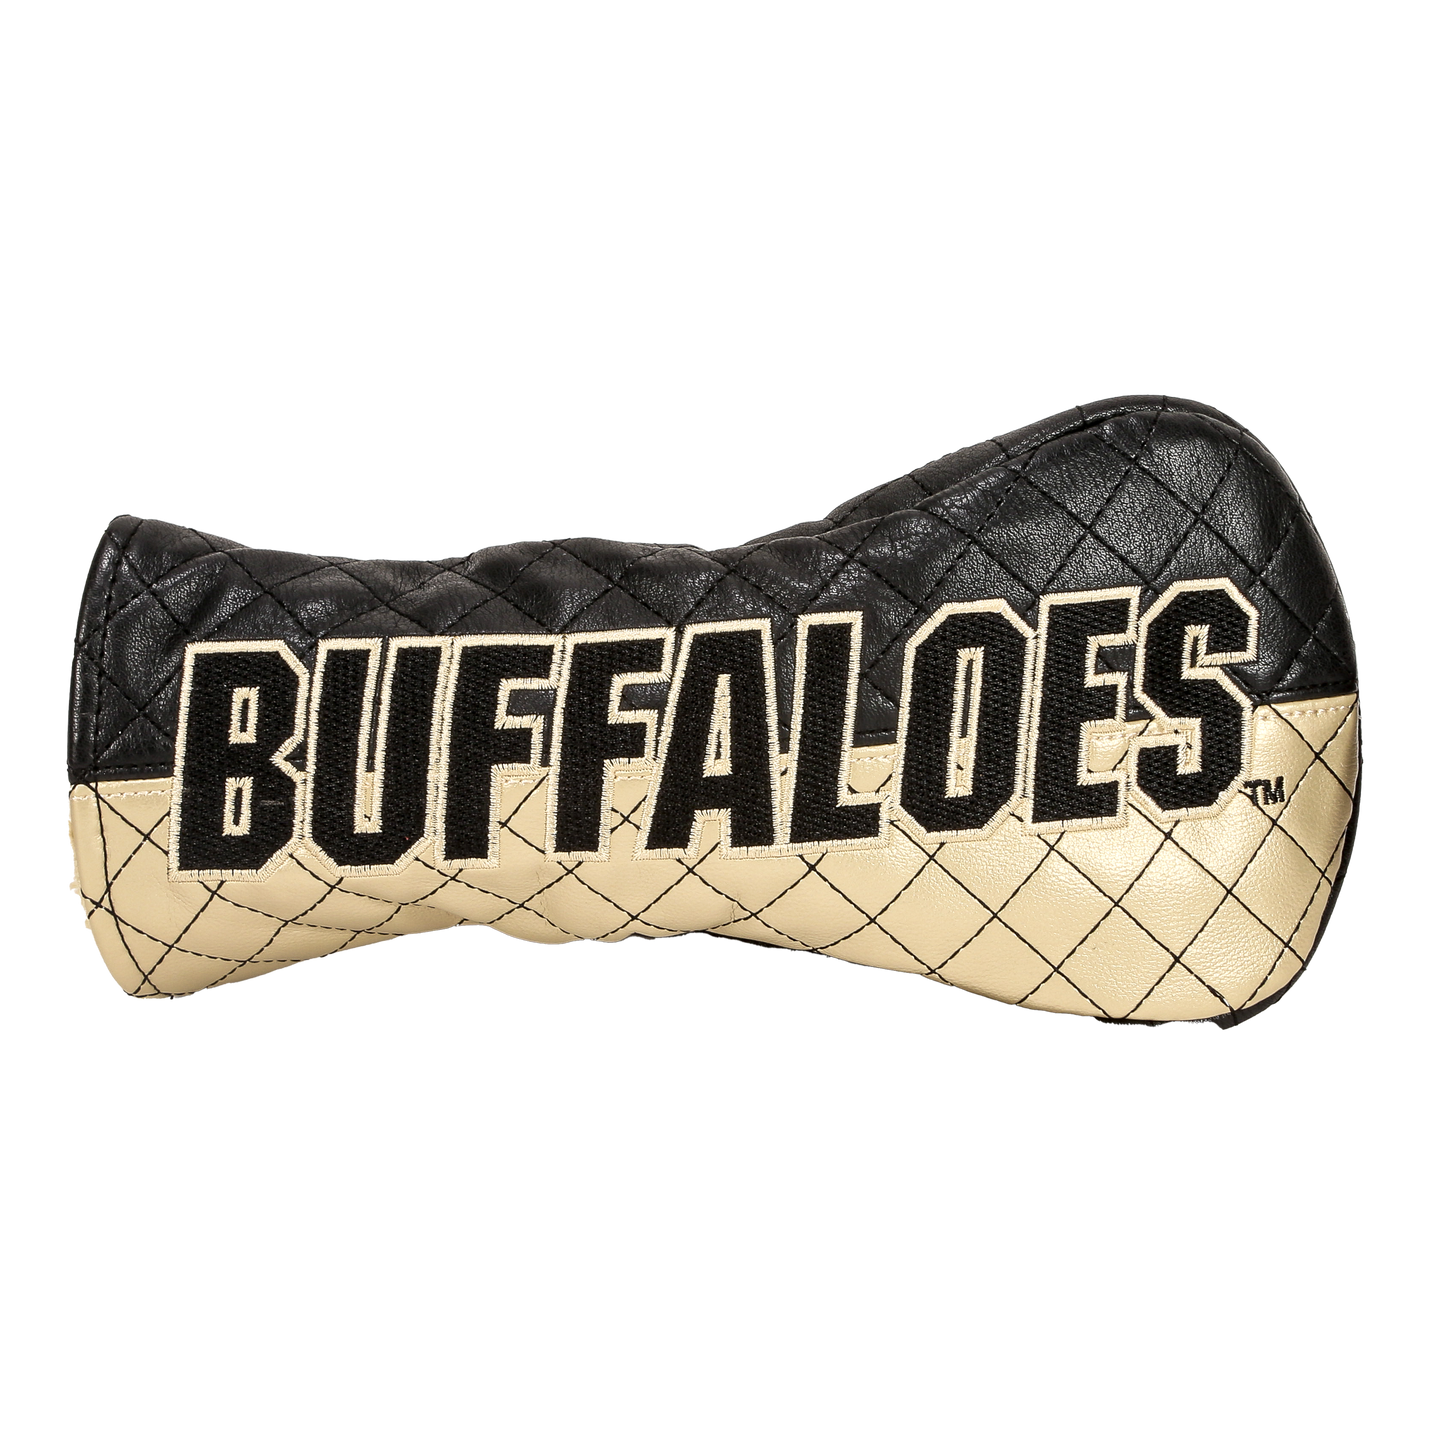 Colorado "Buffaloes" Fairway Cover